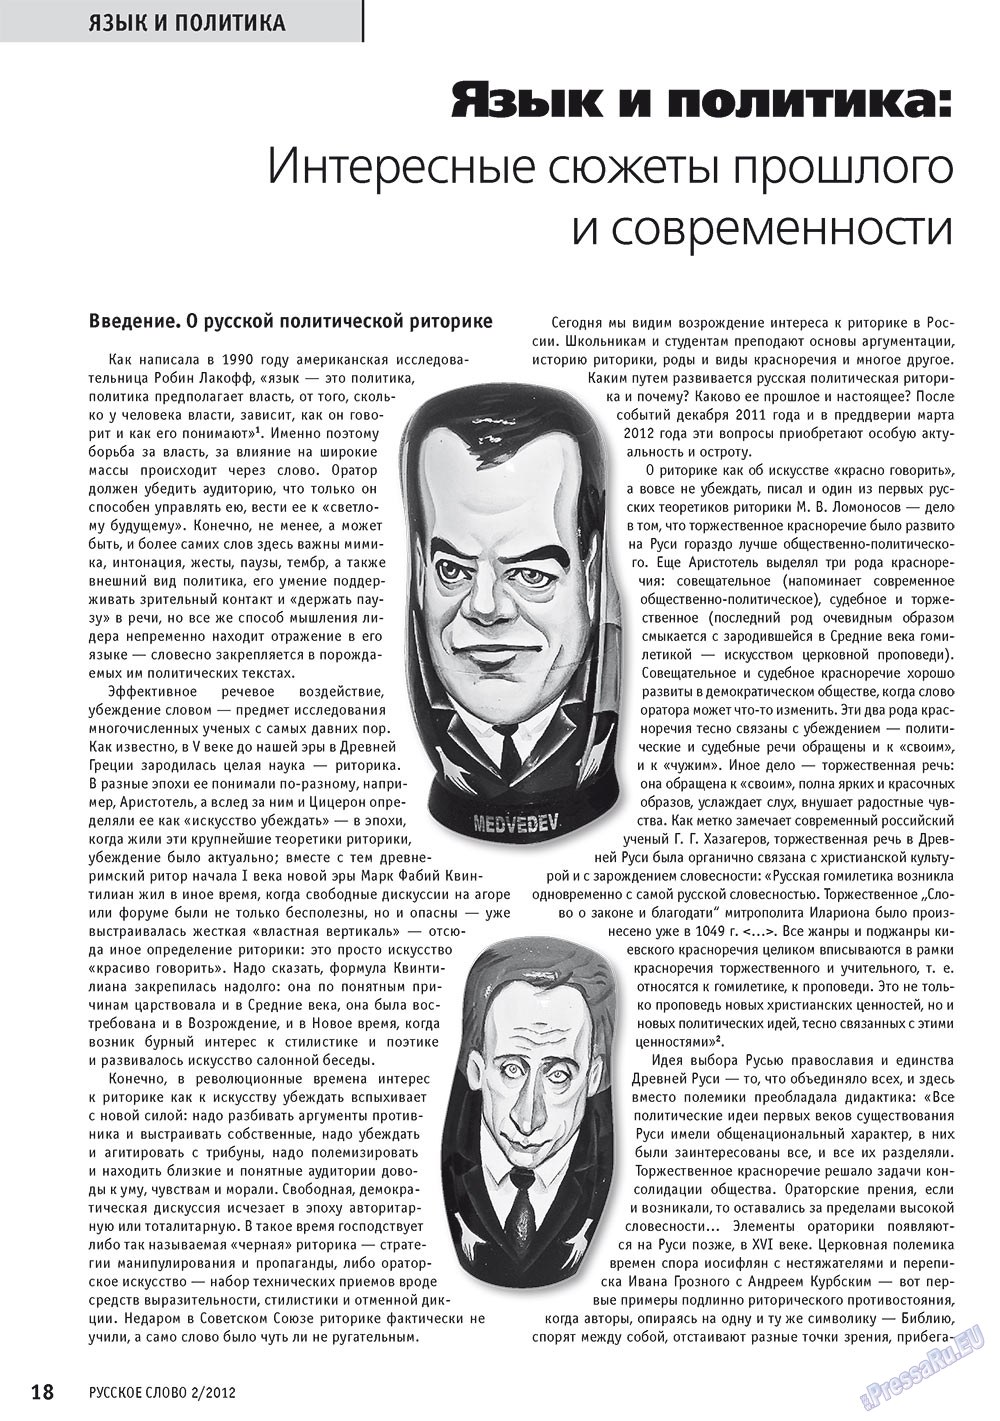 Русское слово, журнал. 2012 №2 стр.20